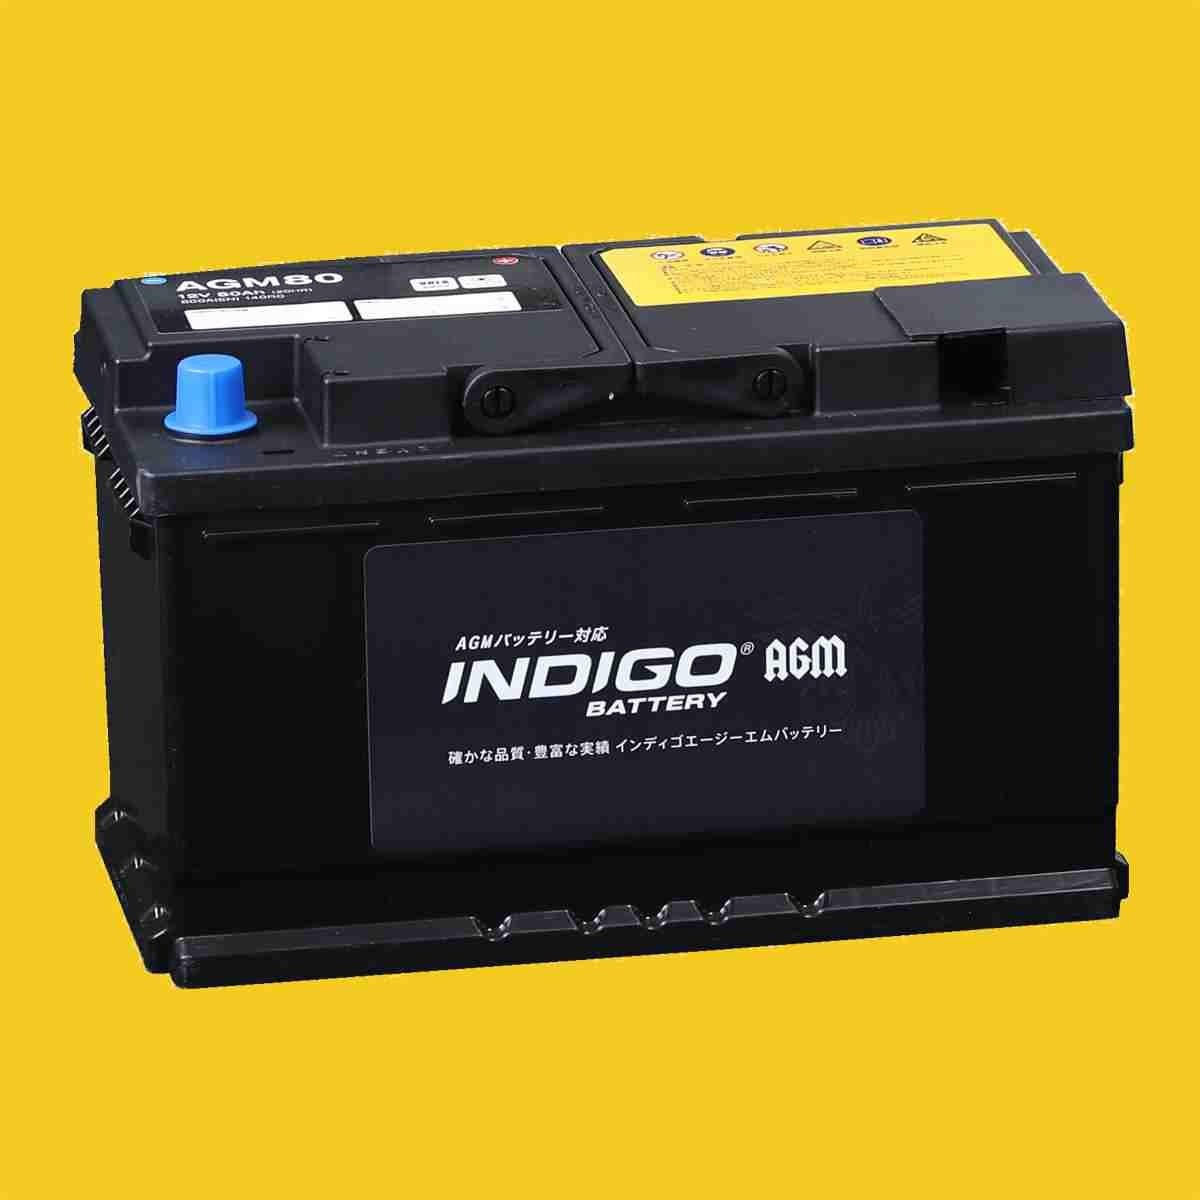 【インディゴバッテリー】AGM80 レンジローバー ABA-LM5S 互換:BLA-80-L4,LN4(AGM) 輸入車用 新品 保証付 即納 AGM EFB対応_画像2